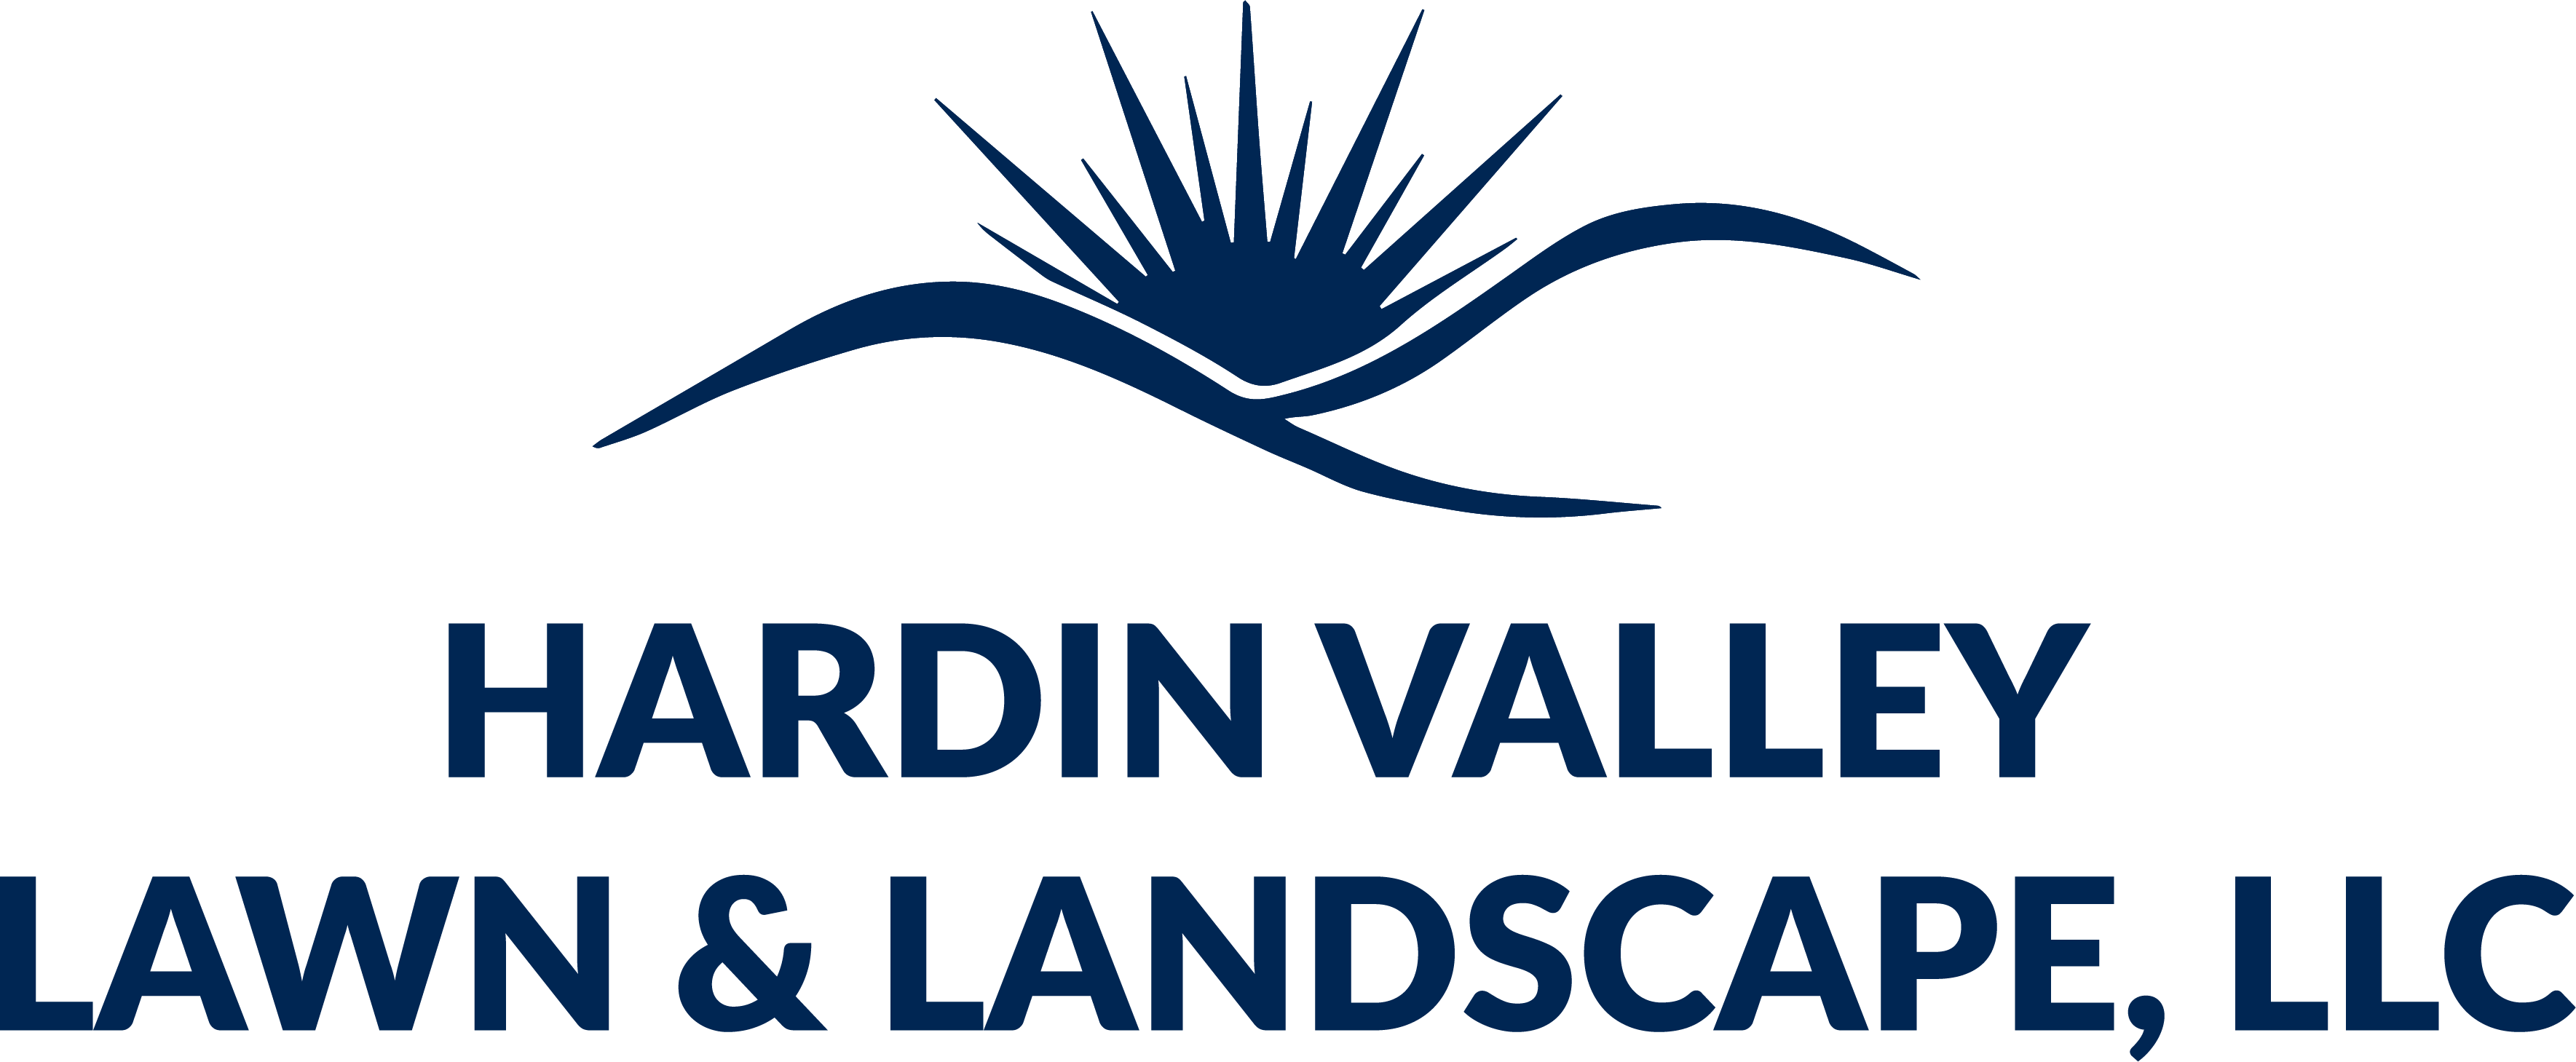 Hardin Valley Lawn & Landscape